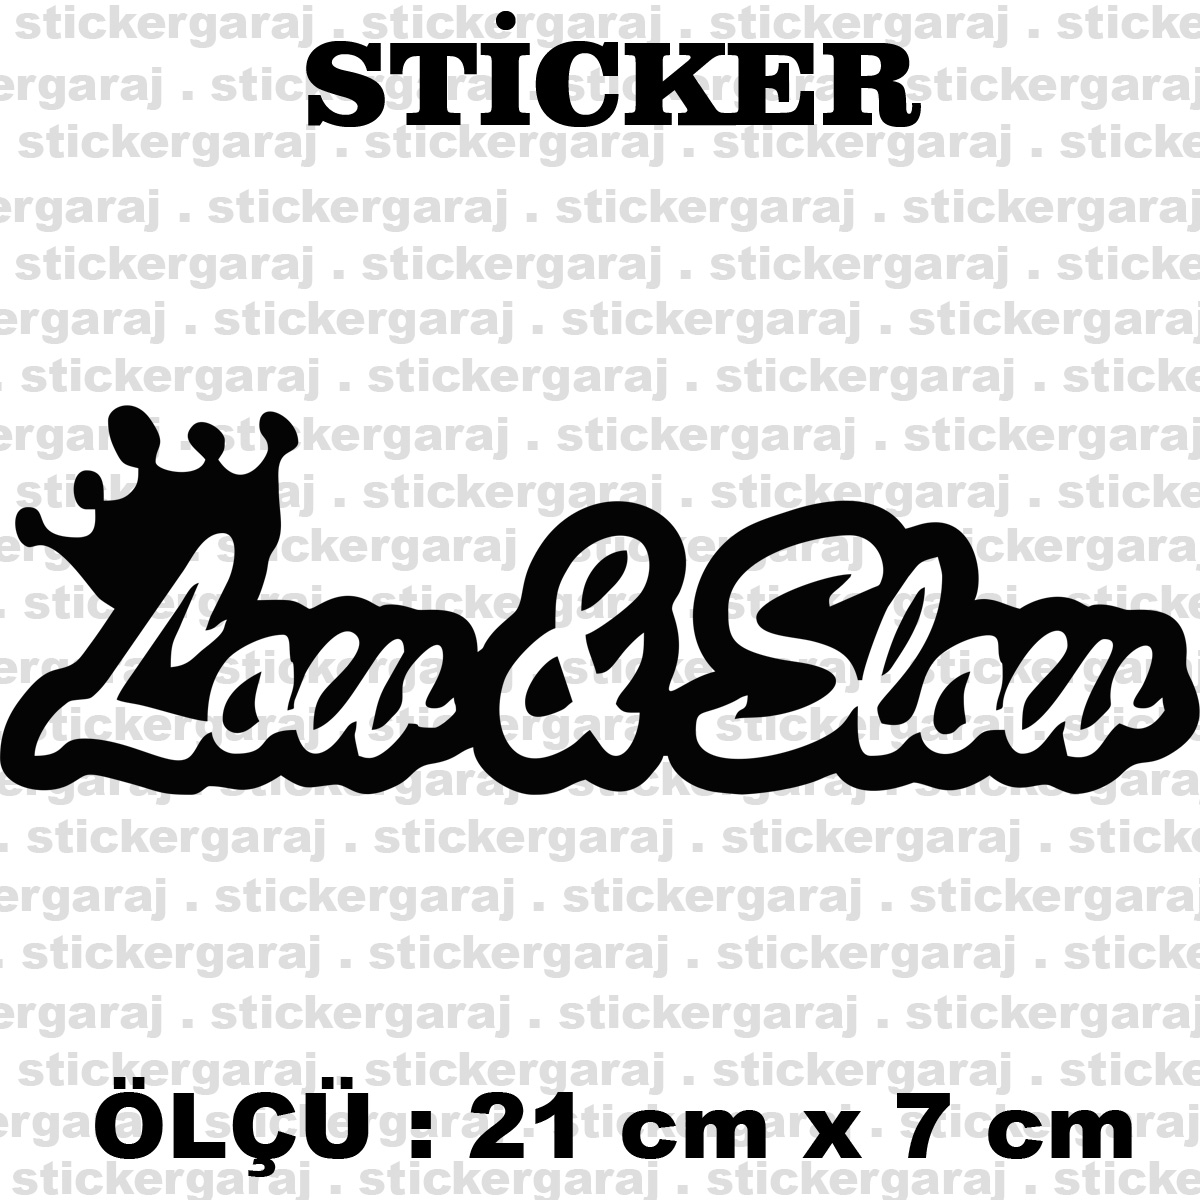 low slow.cdr 21 7cm - Low slow araba oto sticker